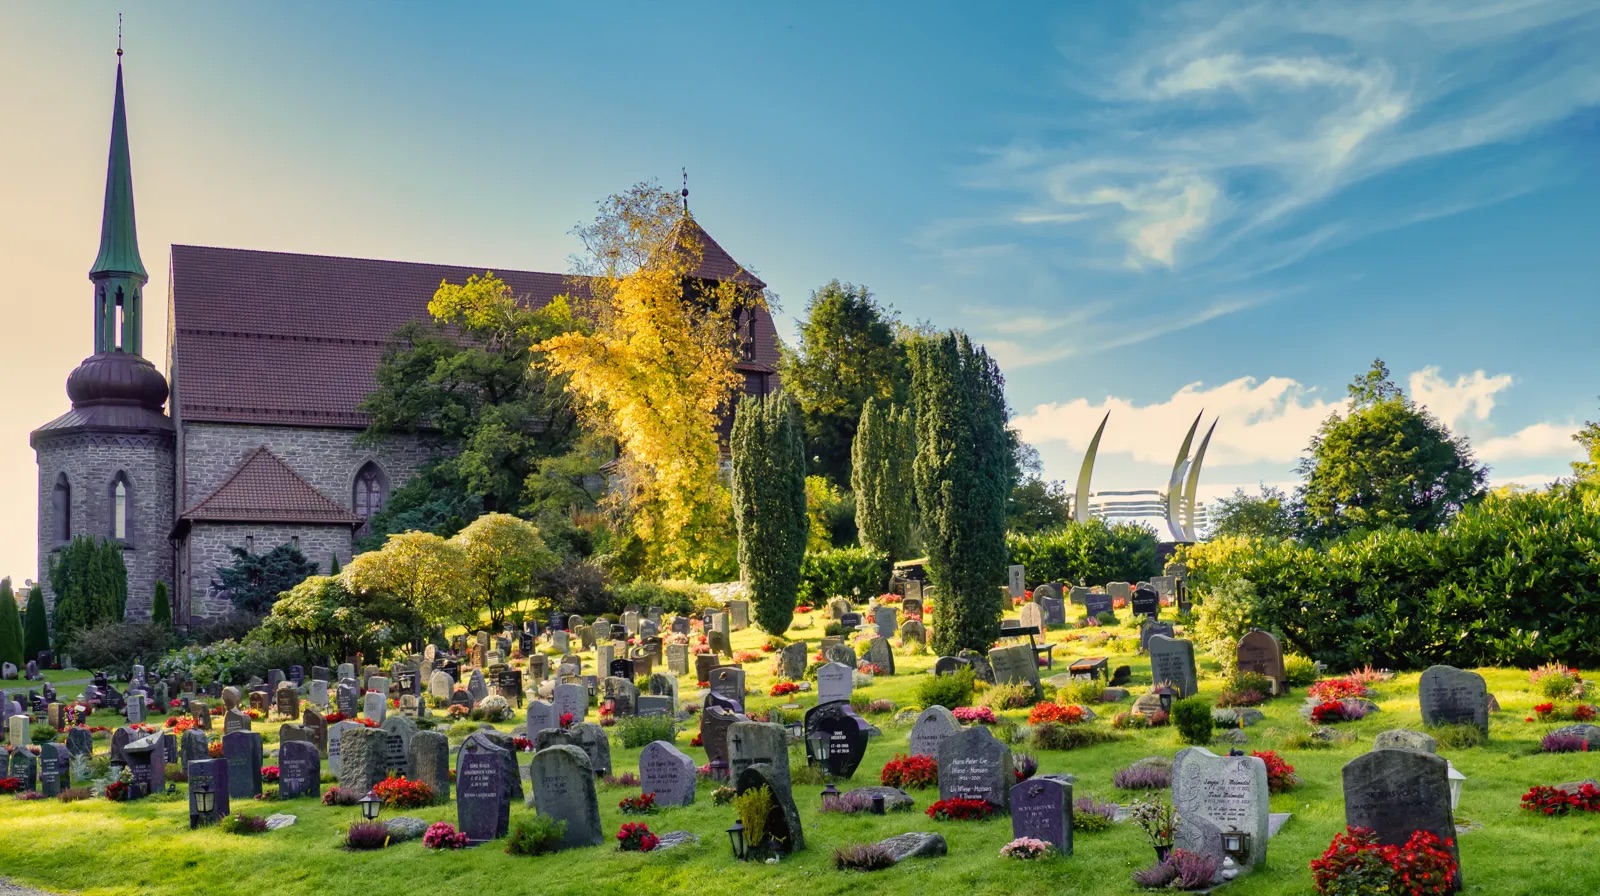 Storetveit kyrka och kyrkogården i Bergen. Kyrkoområdet ser vackert ut på sommaren med grönska och blomsterplanteringar.